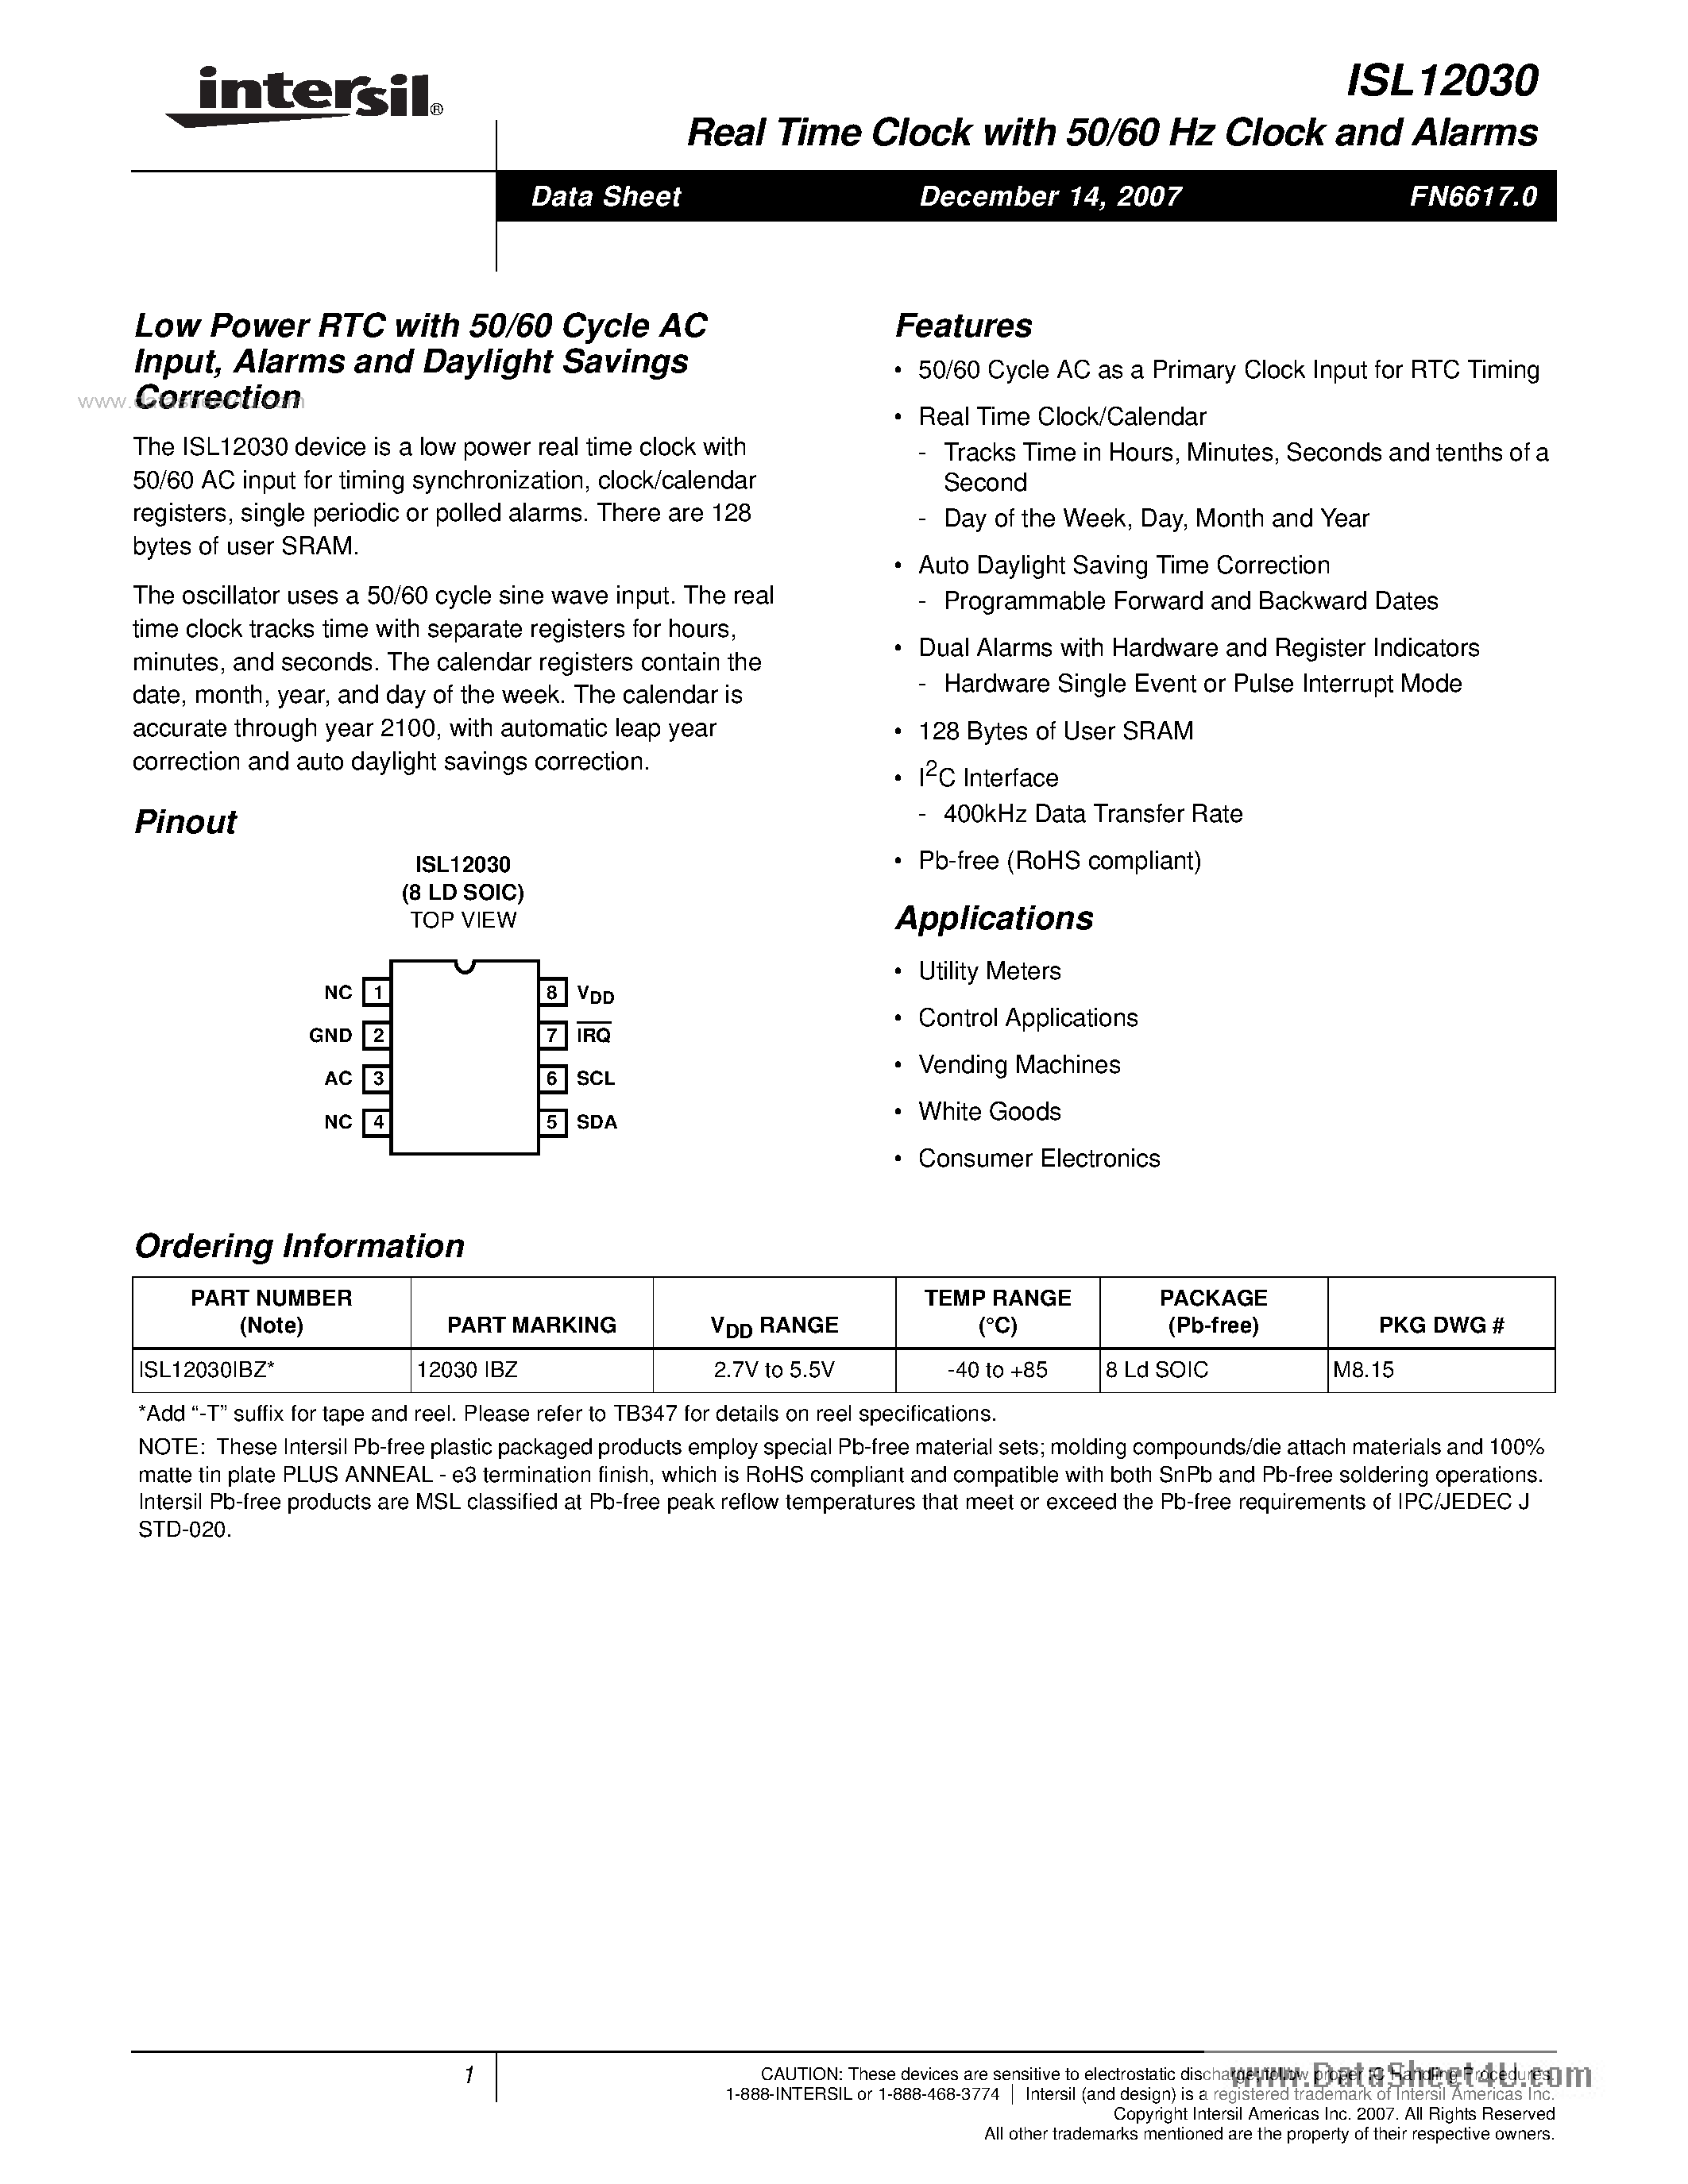 Даташит ISL12030 - Low Power RTC страница 1